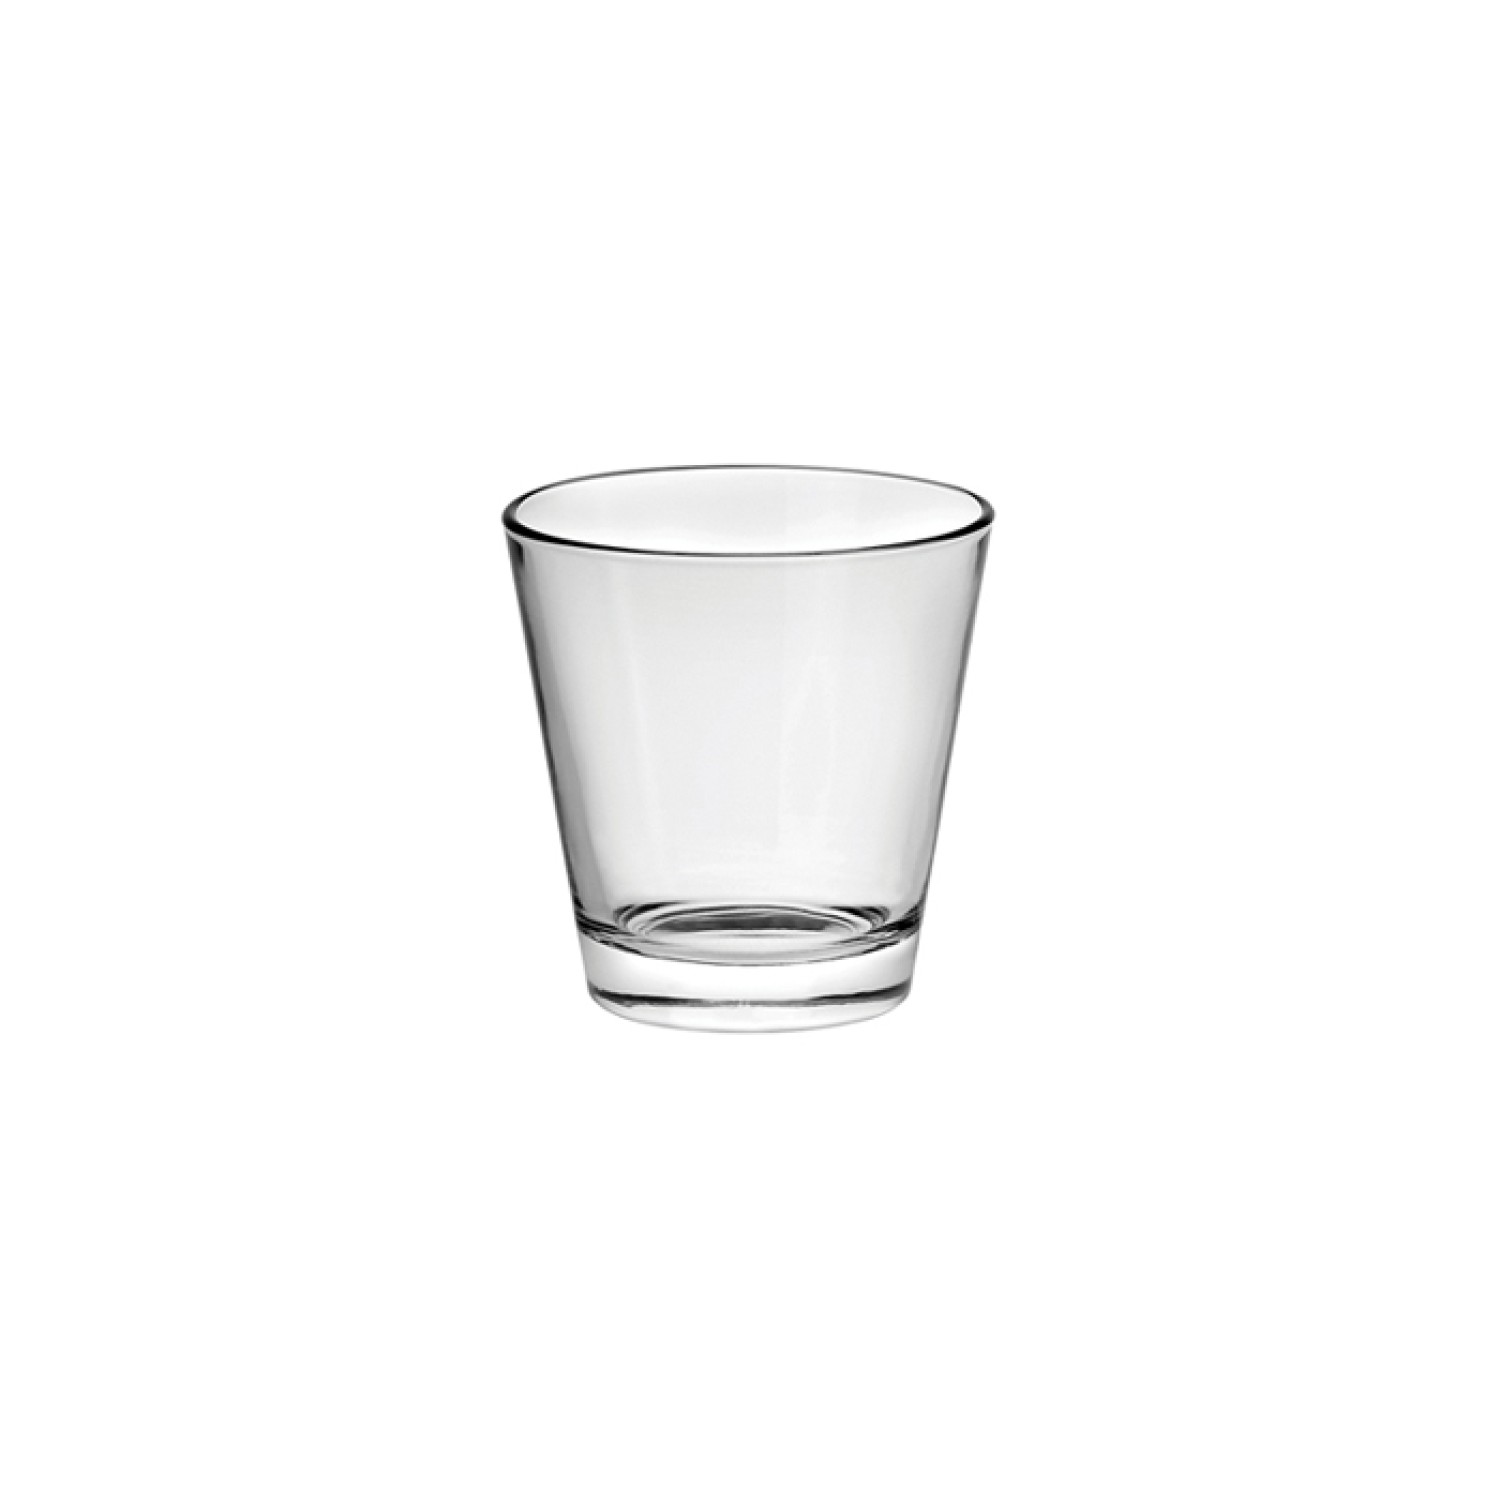 Ποτήρι νερού χαμηλό 27 cl, Conic